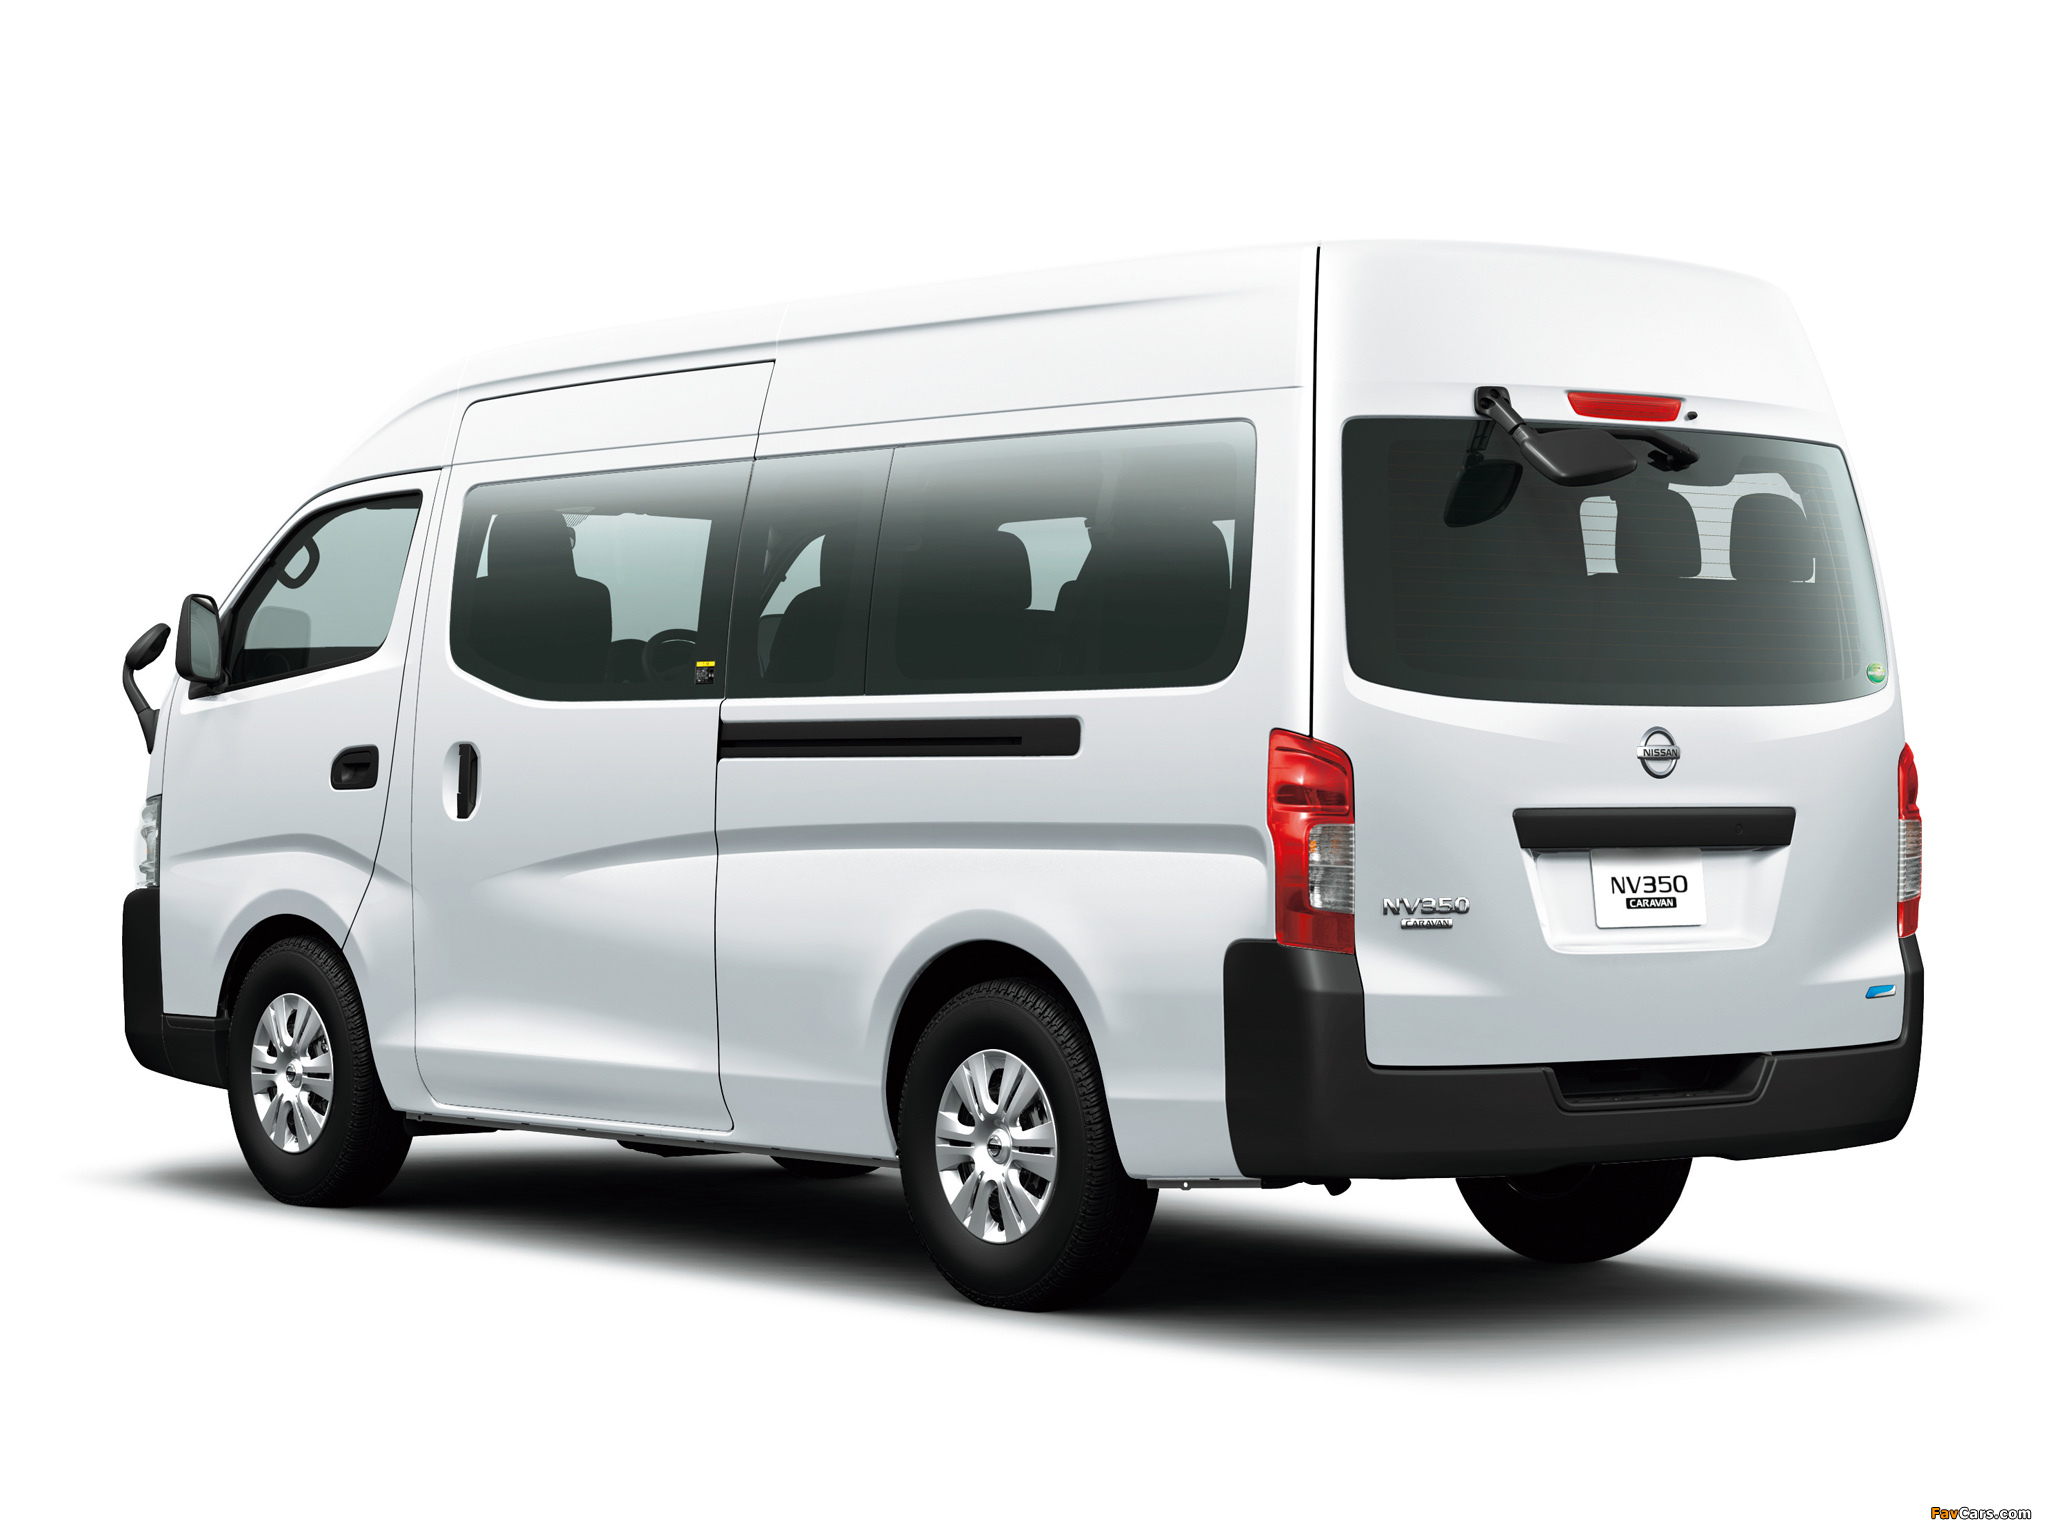 Nissan NV350 Caravan Wide Body (E26) 2012 photos (2048 x 1536)